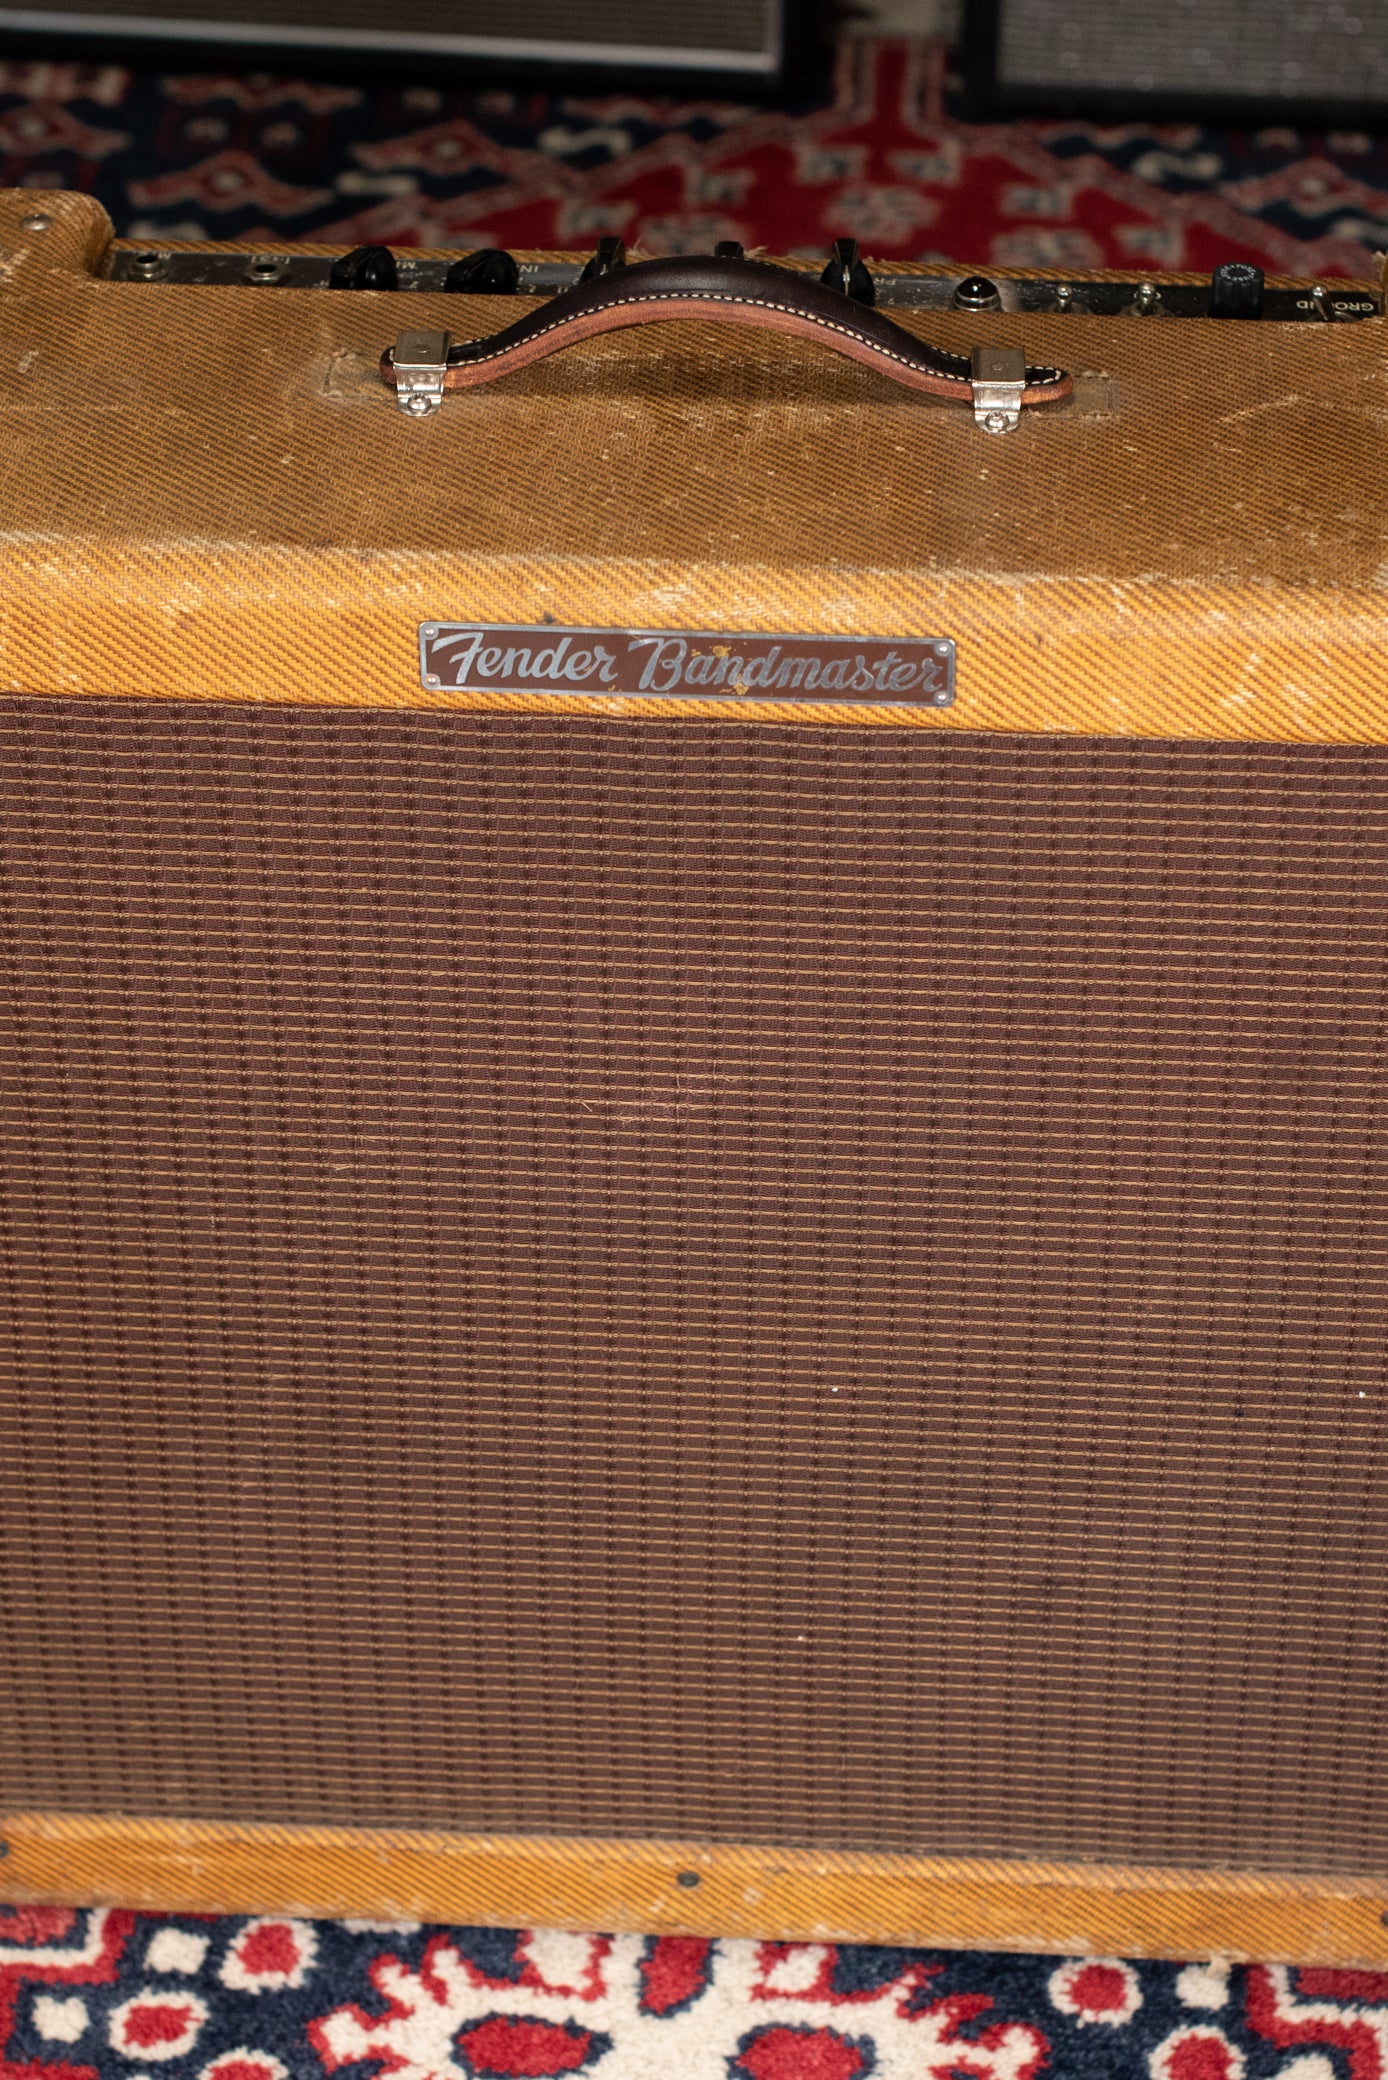 Vintage Tweed Fender Bandmaster